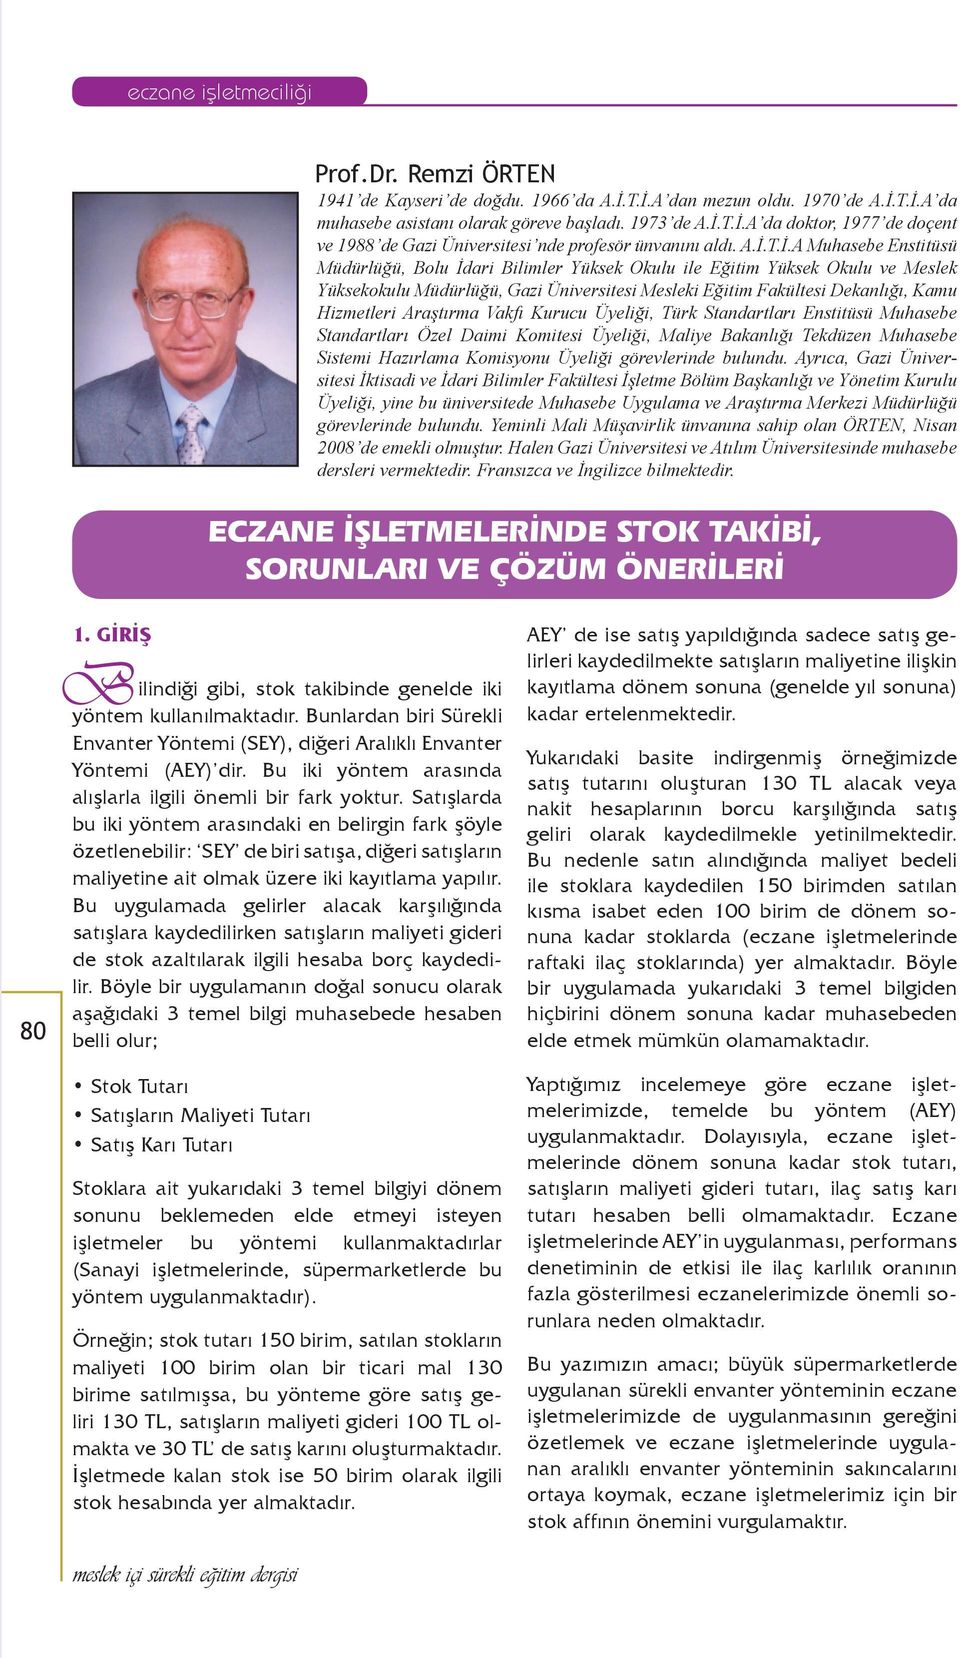 Araştırma Vakfı Kurucu Üyeliği, Türk Standartları Enstitüsü Muhasebe Standartları Özel Daimi Komitesi Üyeliği, Maliye Bakanlığı Tekdüzen Muhasebe Sistemi Hazırlama Komisyonu Üyeliği görevlerinde